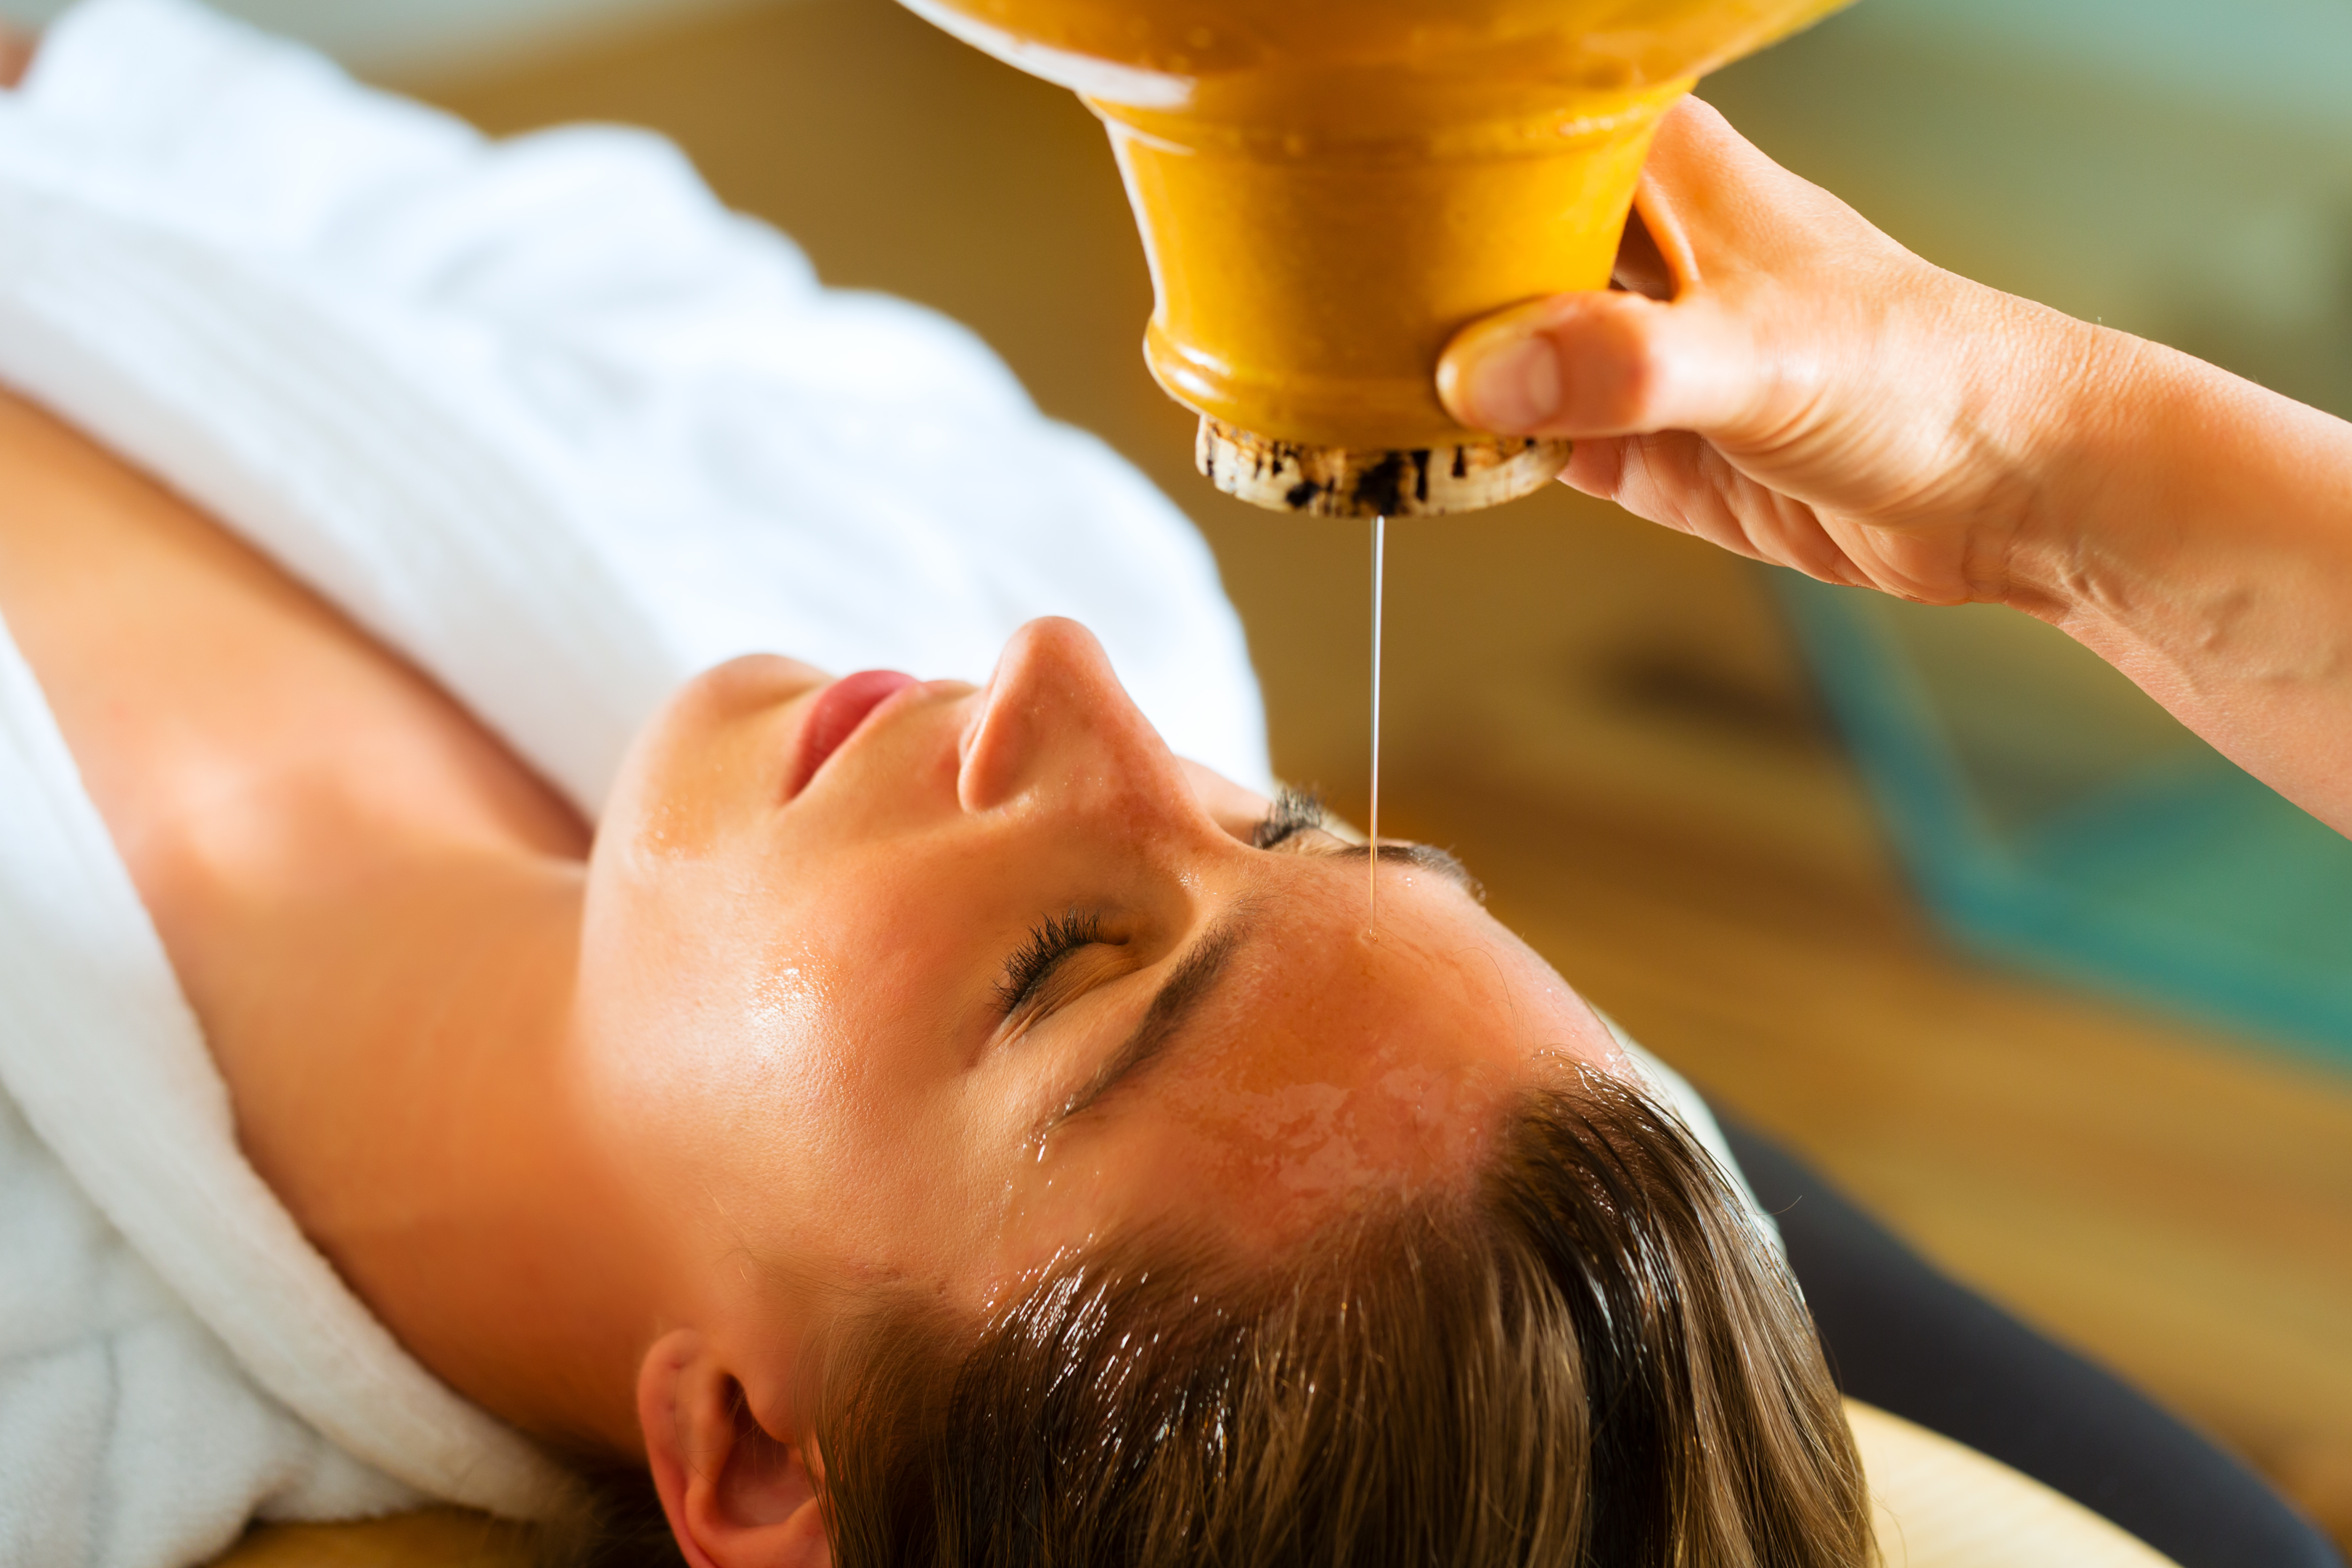 Massage olie verwarmen